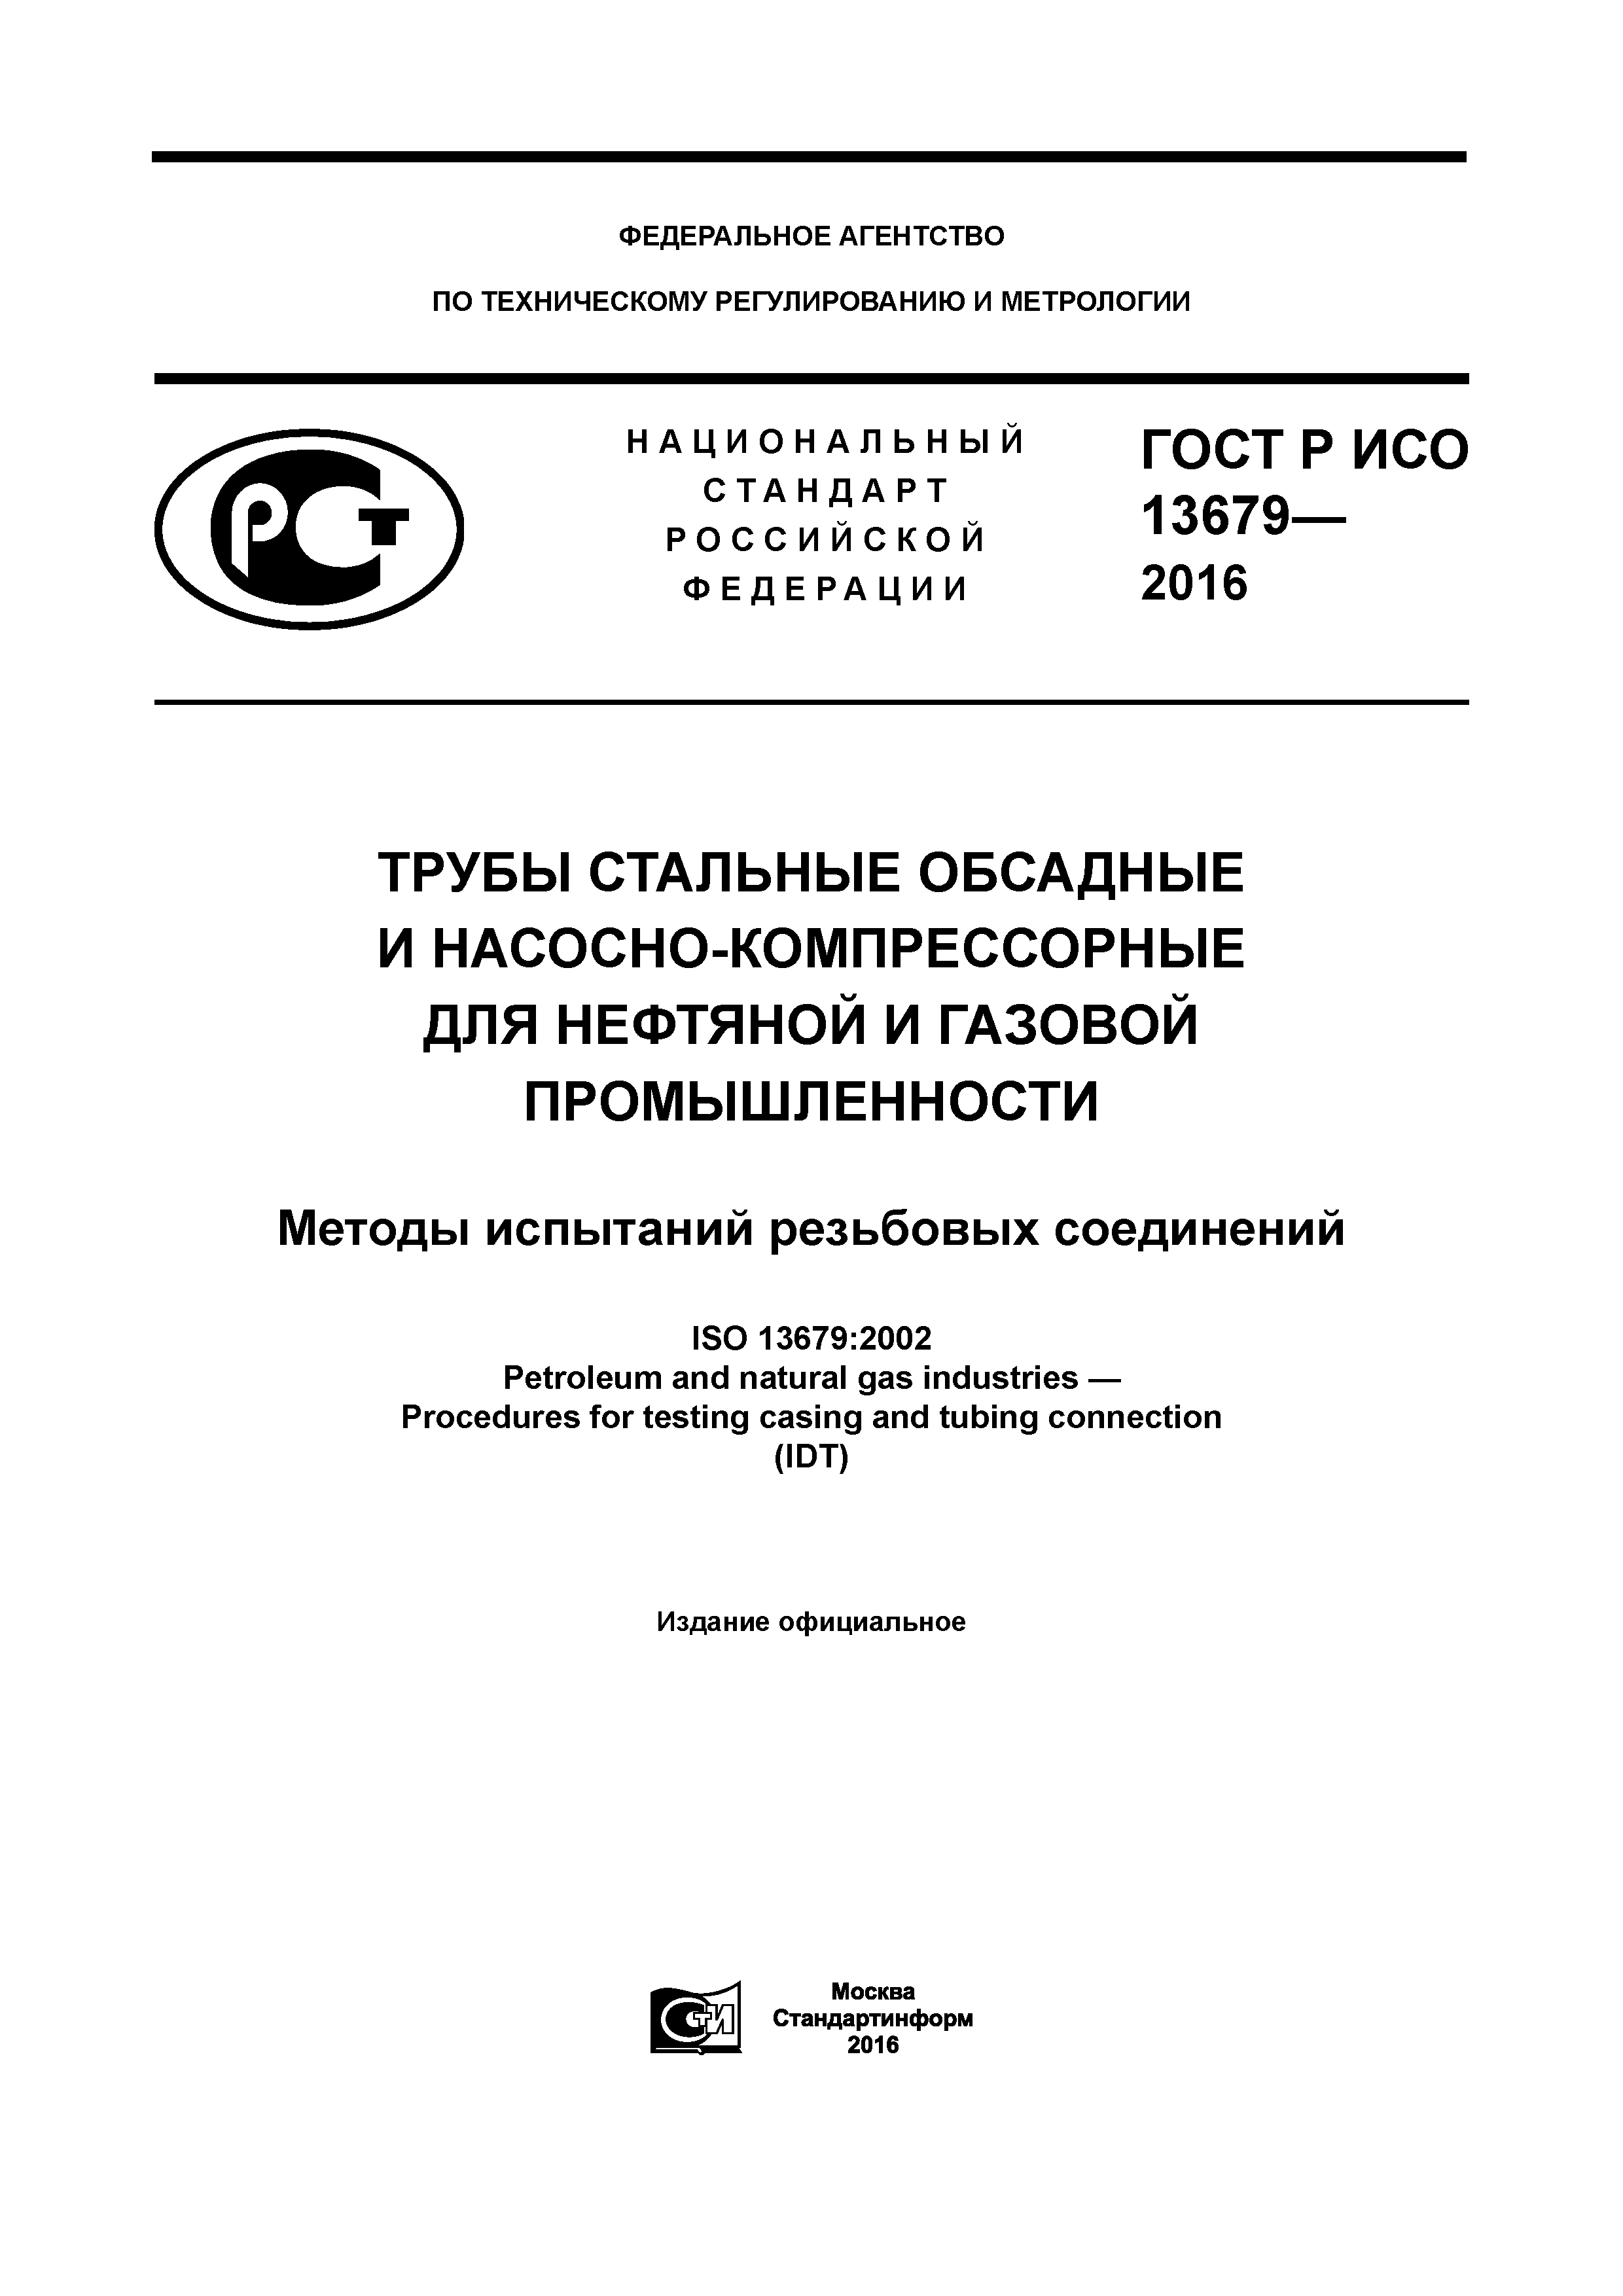 ГОСТ Р ИСО 13679-2016